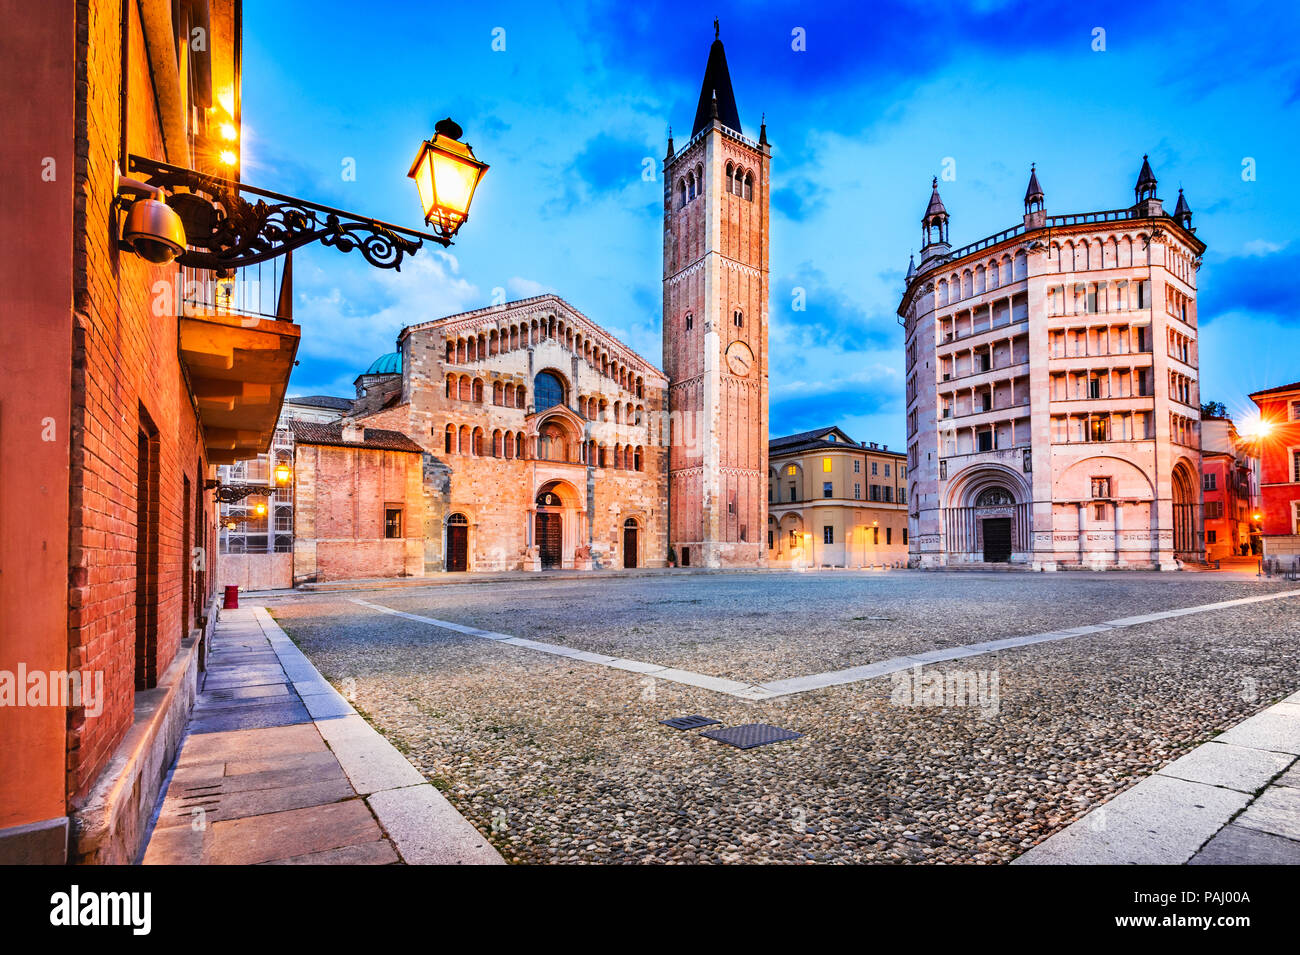 Parme, Italie - Piazza del Duomo avec la Cathédrale et le Baptistère, construit en 1059. L'architecture romane en Emilie-Romagne. Banque D'Images